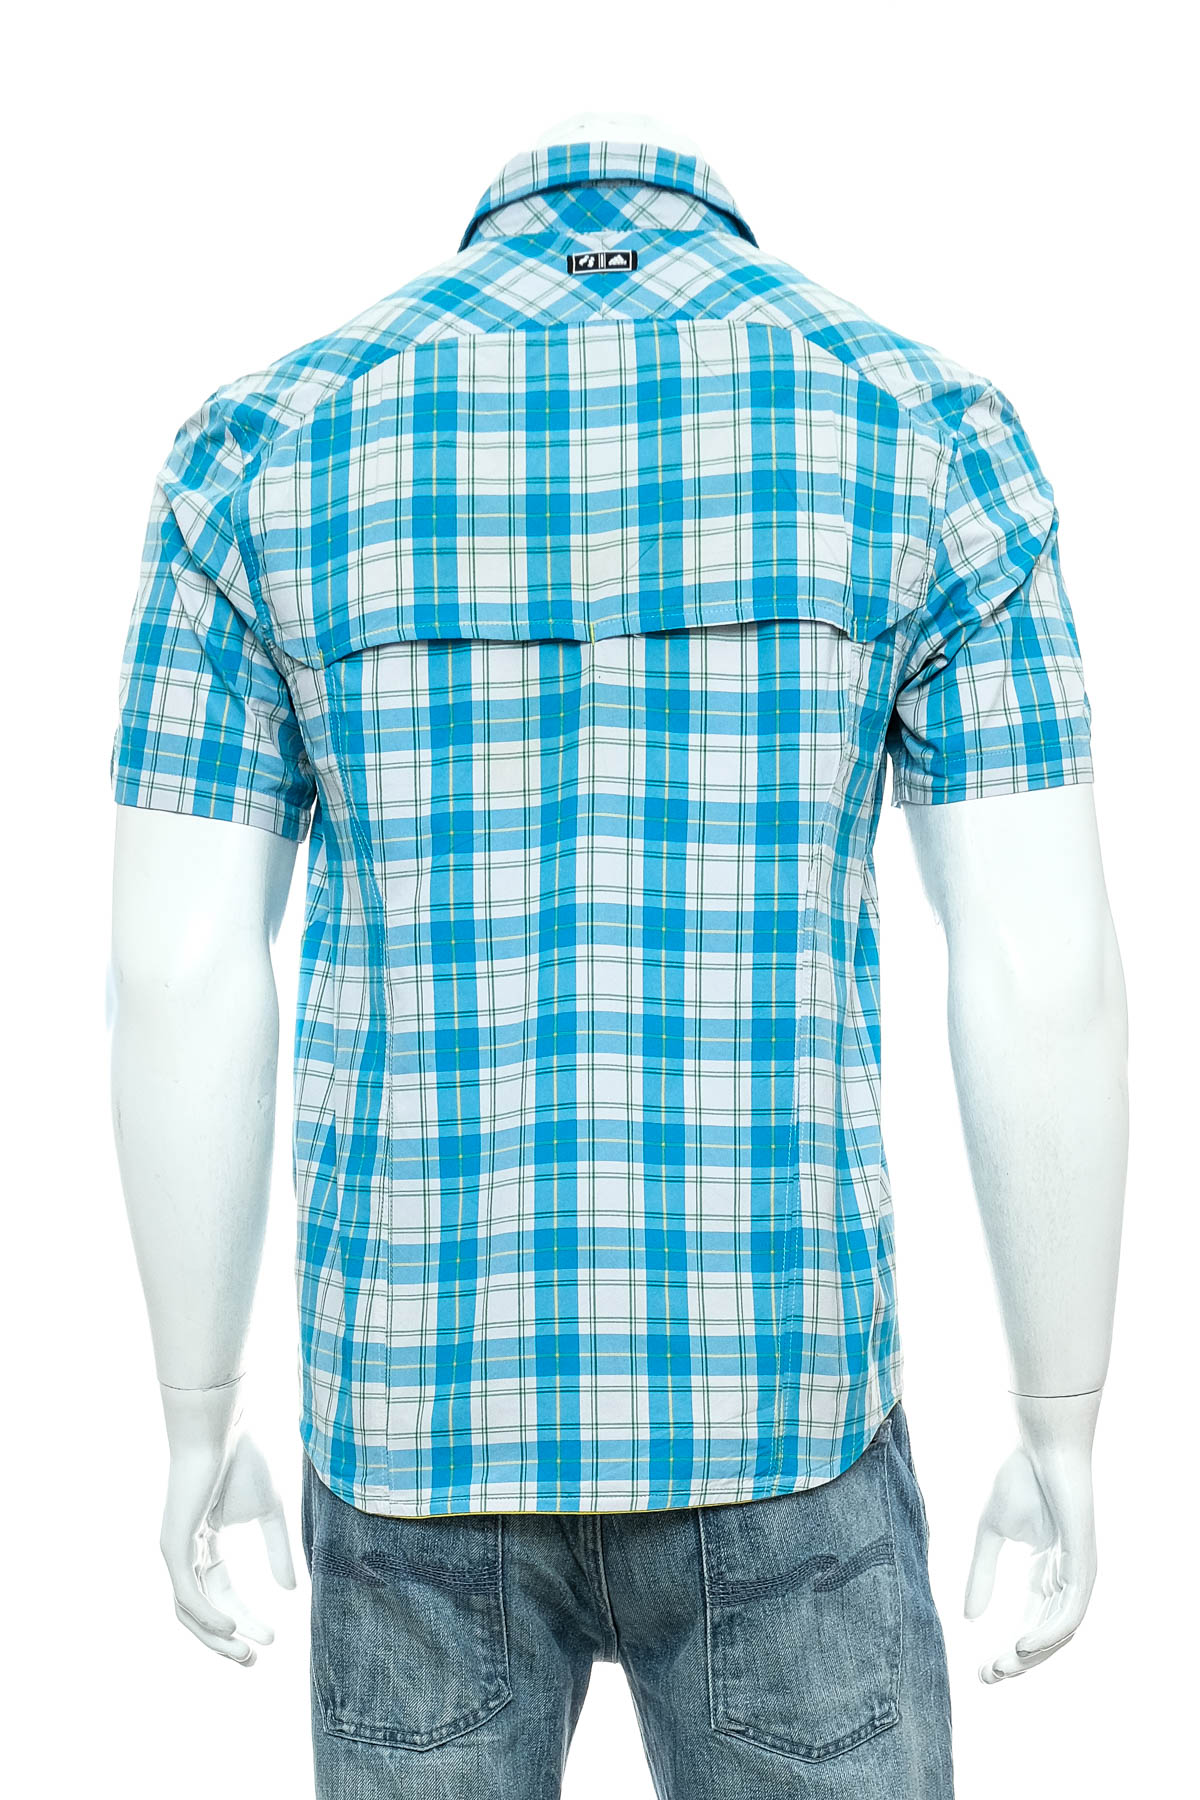 Men's shirt - Adidas - 1